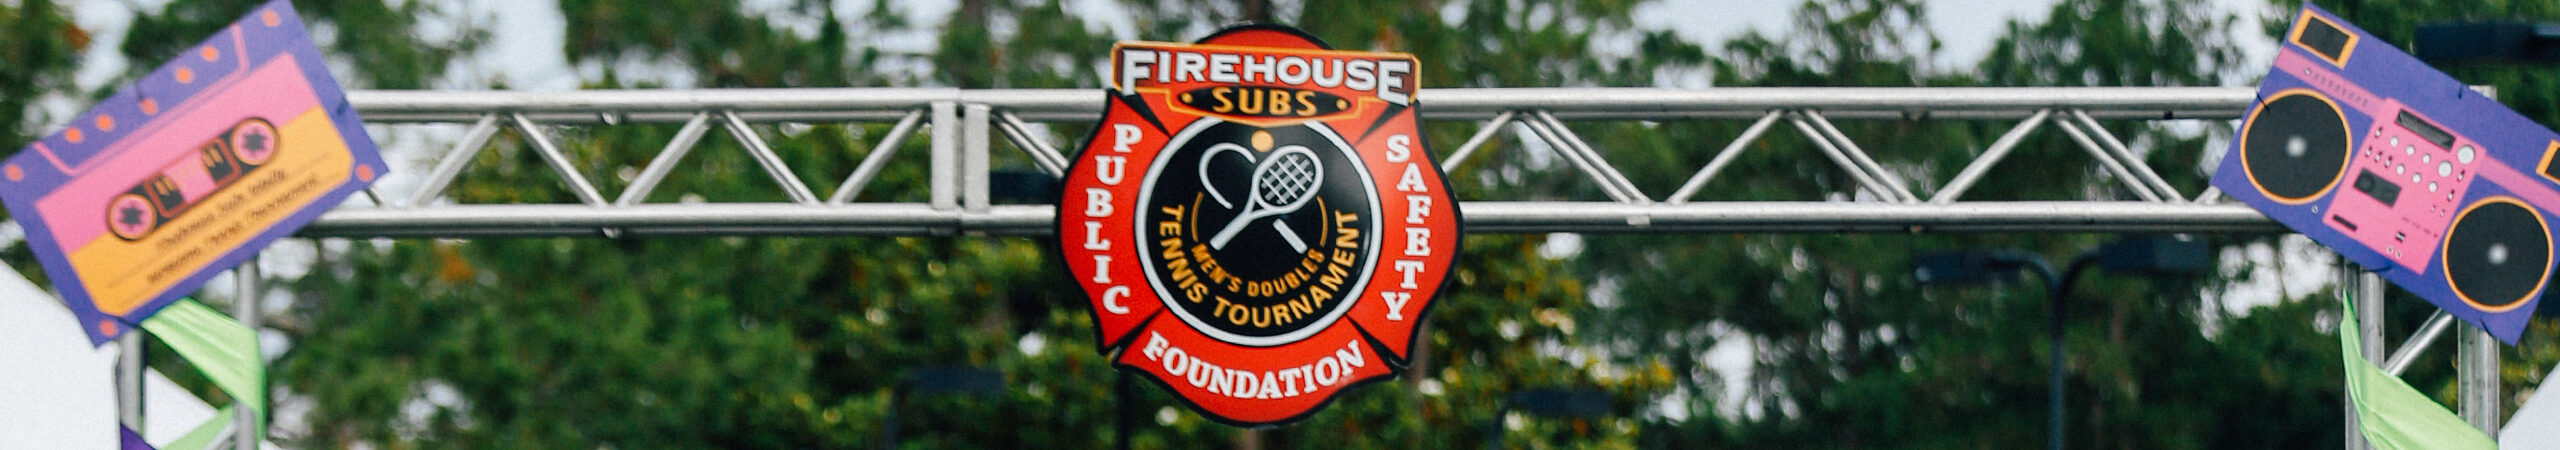 Firehouse Subs Men’s Doubles Tennis Tournament 2018